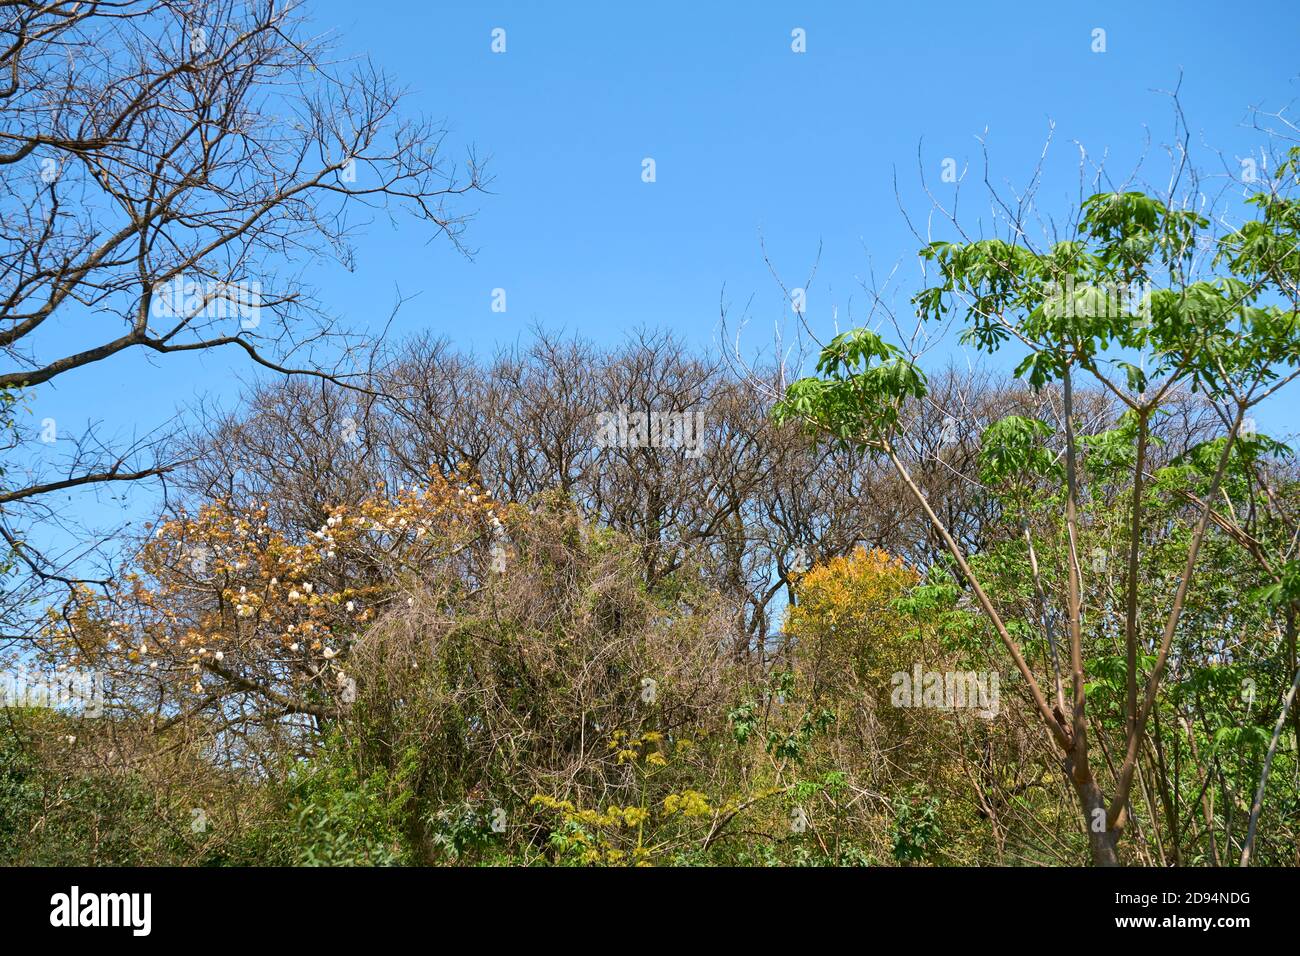 Arbres au printemps, dans la réserve écologique de Costanera sur, à Buenos Aires, en Argentine. Des feuilles et des fleurs luxuriantes fleurissent. Concepts de vie et de renaissance. Banque D'Images